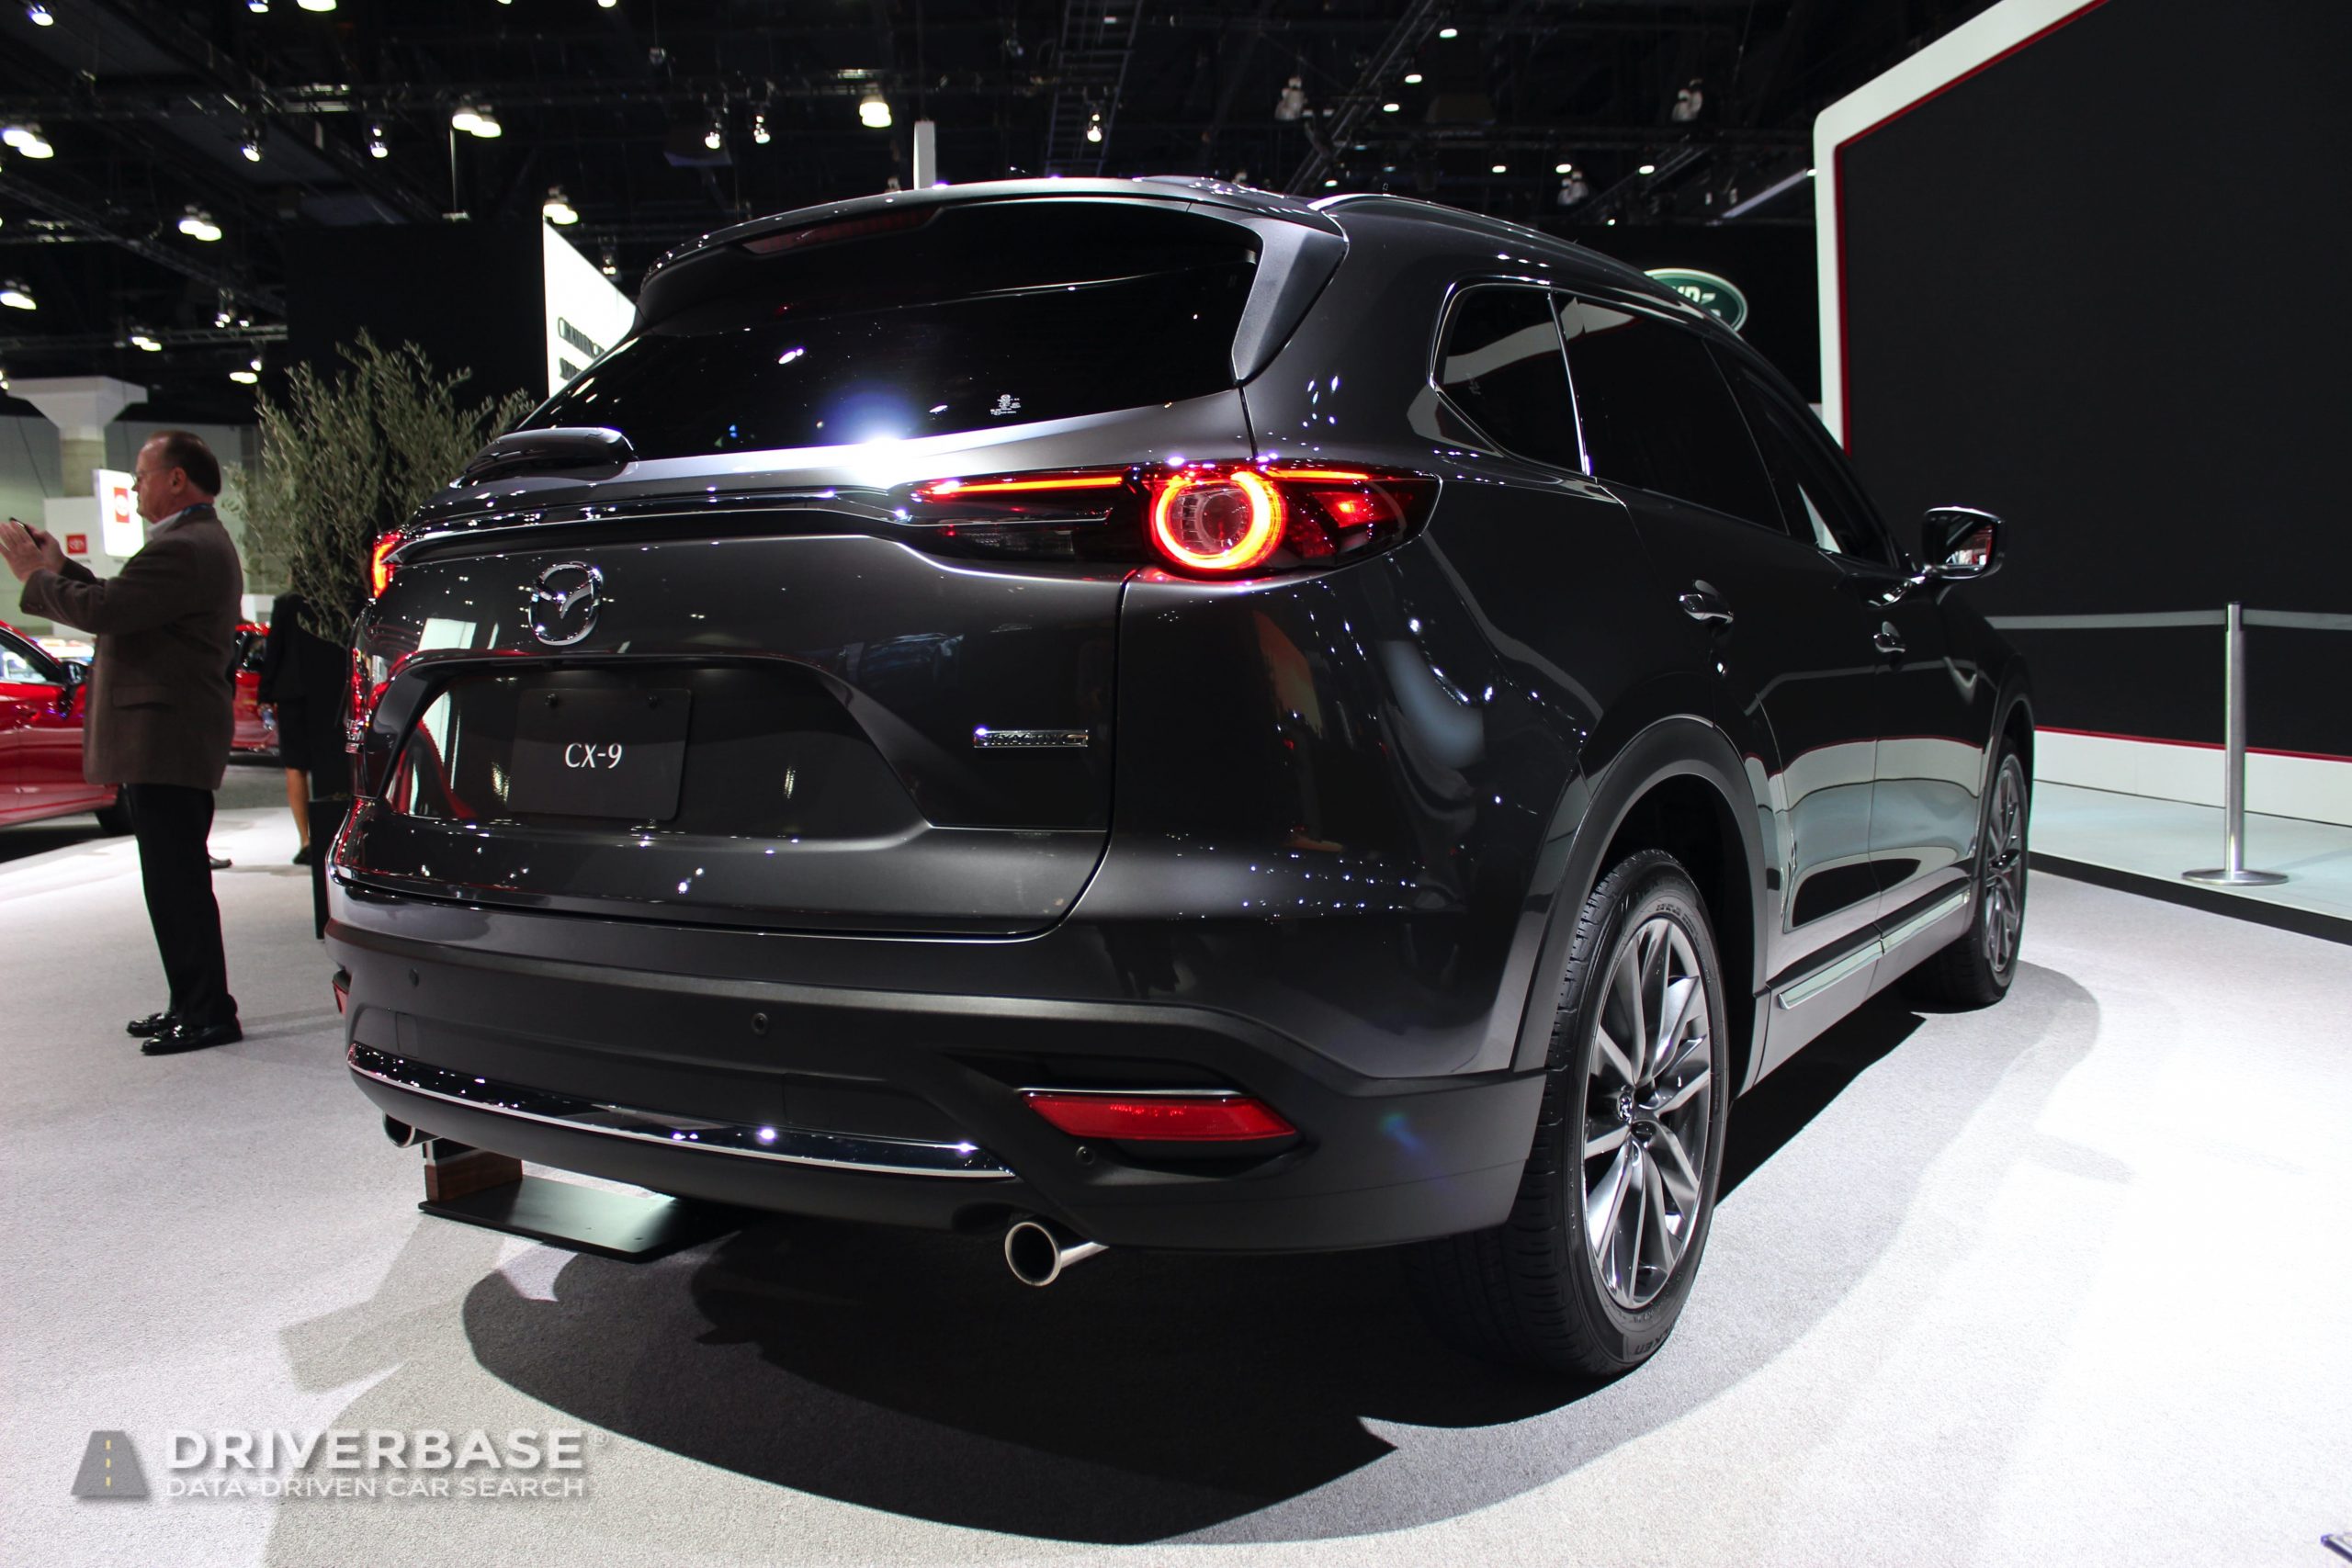 2020 Mazda CX-9 at the 2019 Los Angeles Auto Show